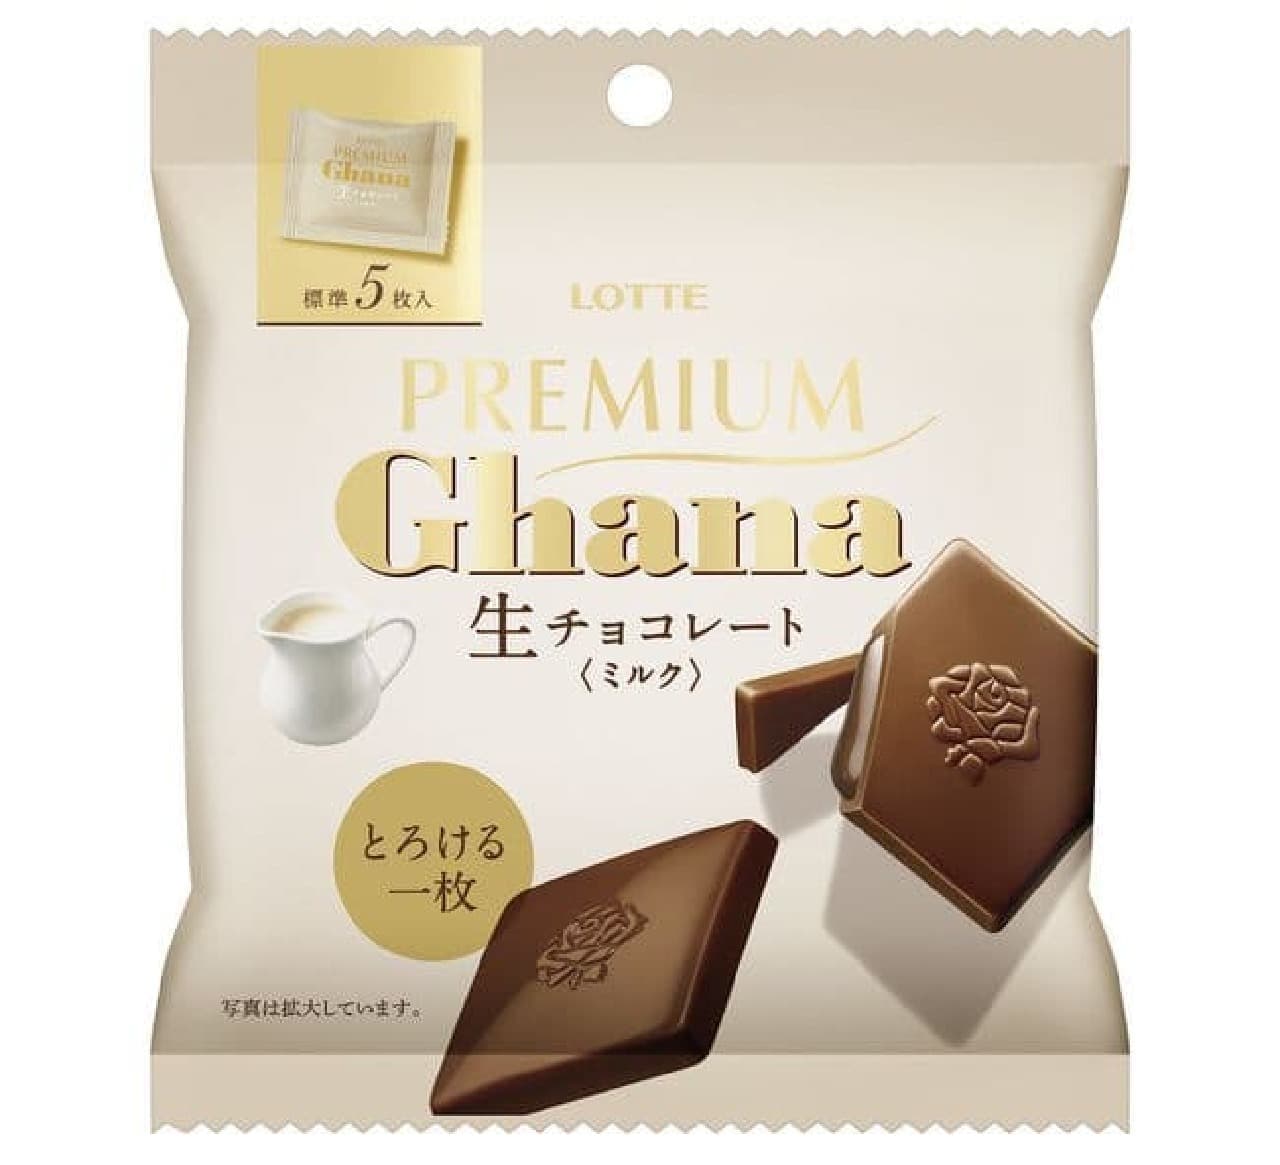 Premium Ghana Raw Chocolate [Milk] Personal Pack